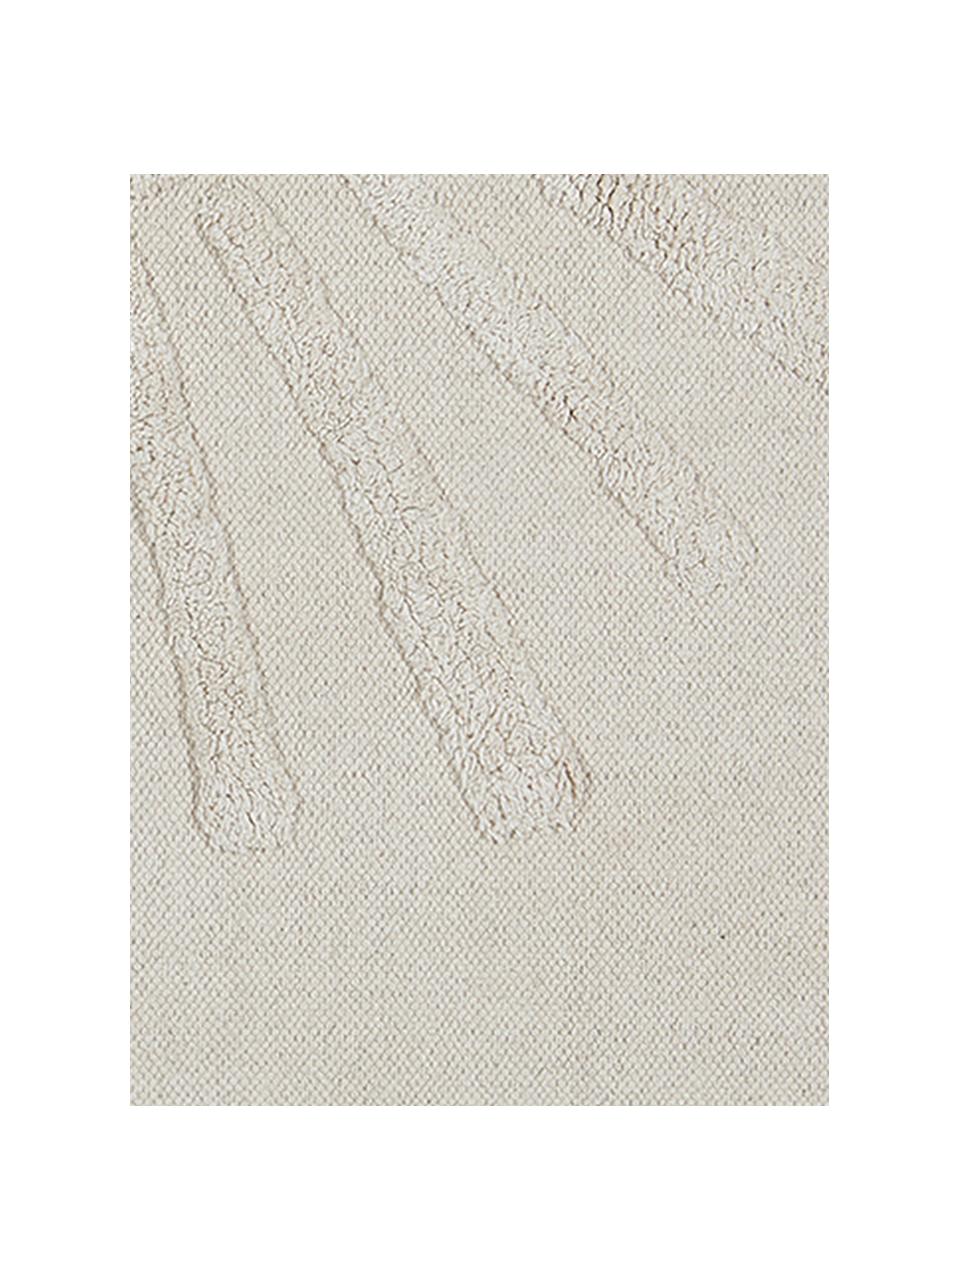 Tappeto bagno con motivo a rilievo Sun, 100% cotone organico
Non antiscivolo, Beige, Larg. 60 x Lung. 90 cm